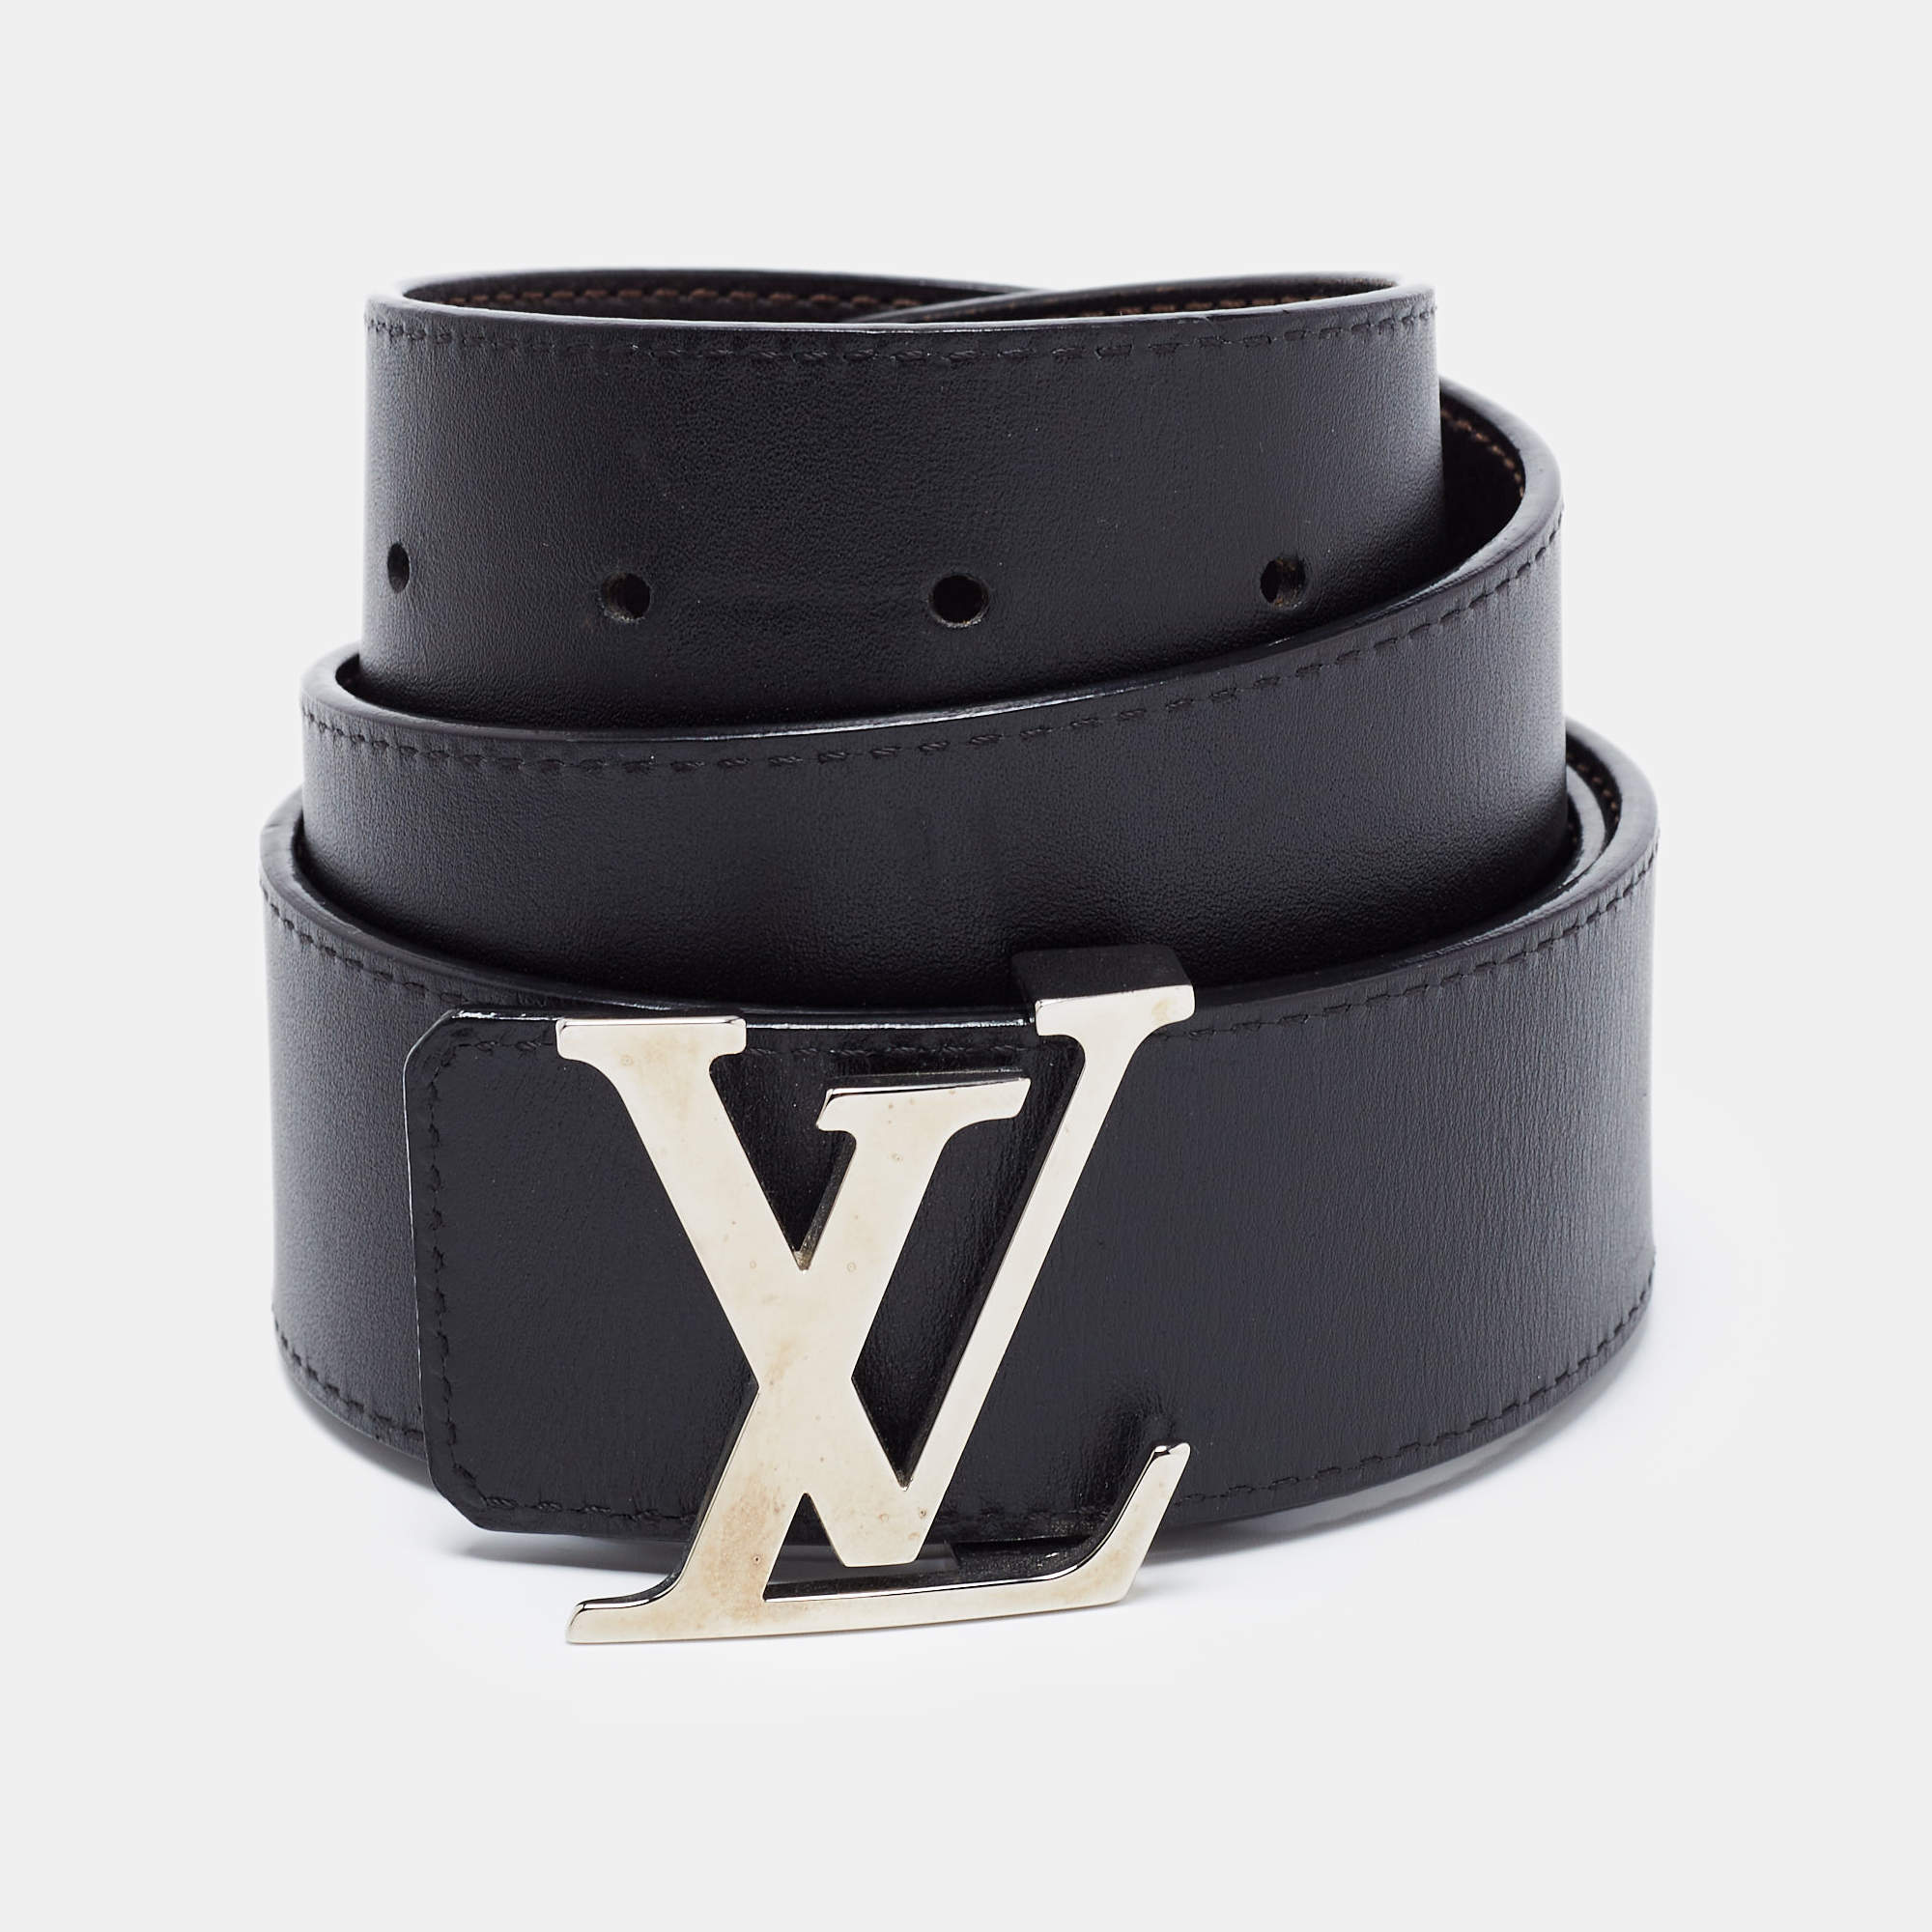 Pre-Owned Rare limited edition Louis Vuitton LOUIS VUITTON leather belt  N1002 Sunture LV 100LV 85 size 80-90cm black men's (Good) 